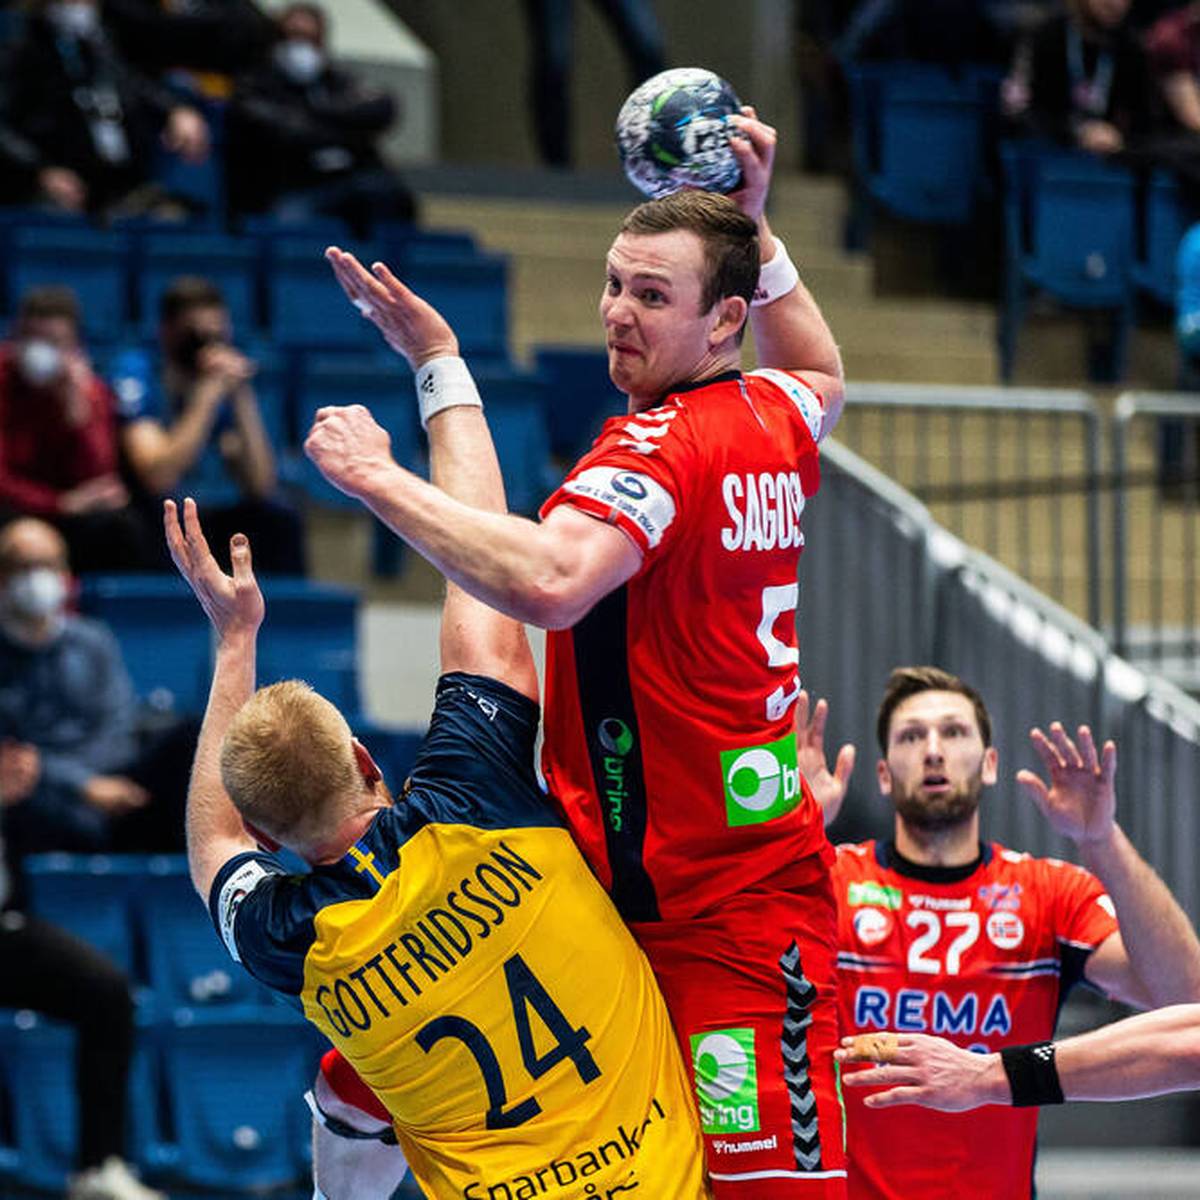 Norwegen verpasst bei der Handball-EM erneut den ersehnten großen Titel. Superstar Sander Sagosen wird zum Sündenbock für das frühe Aus.